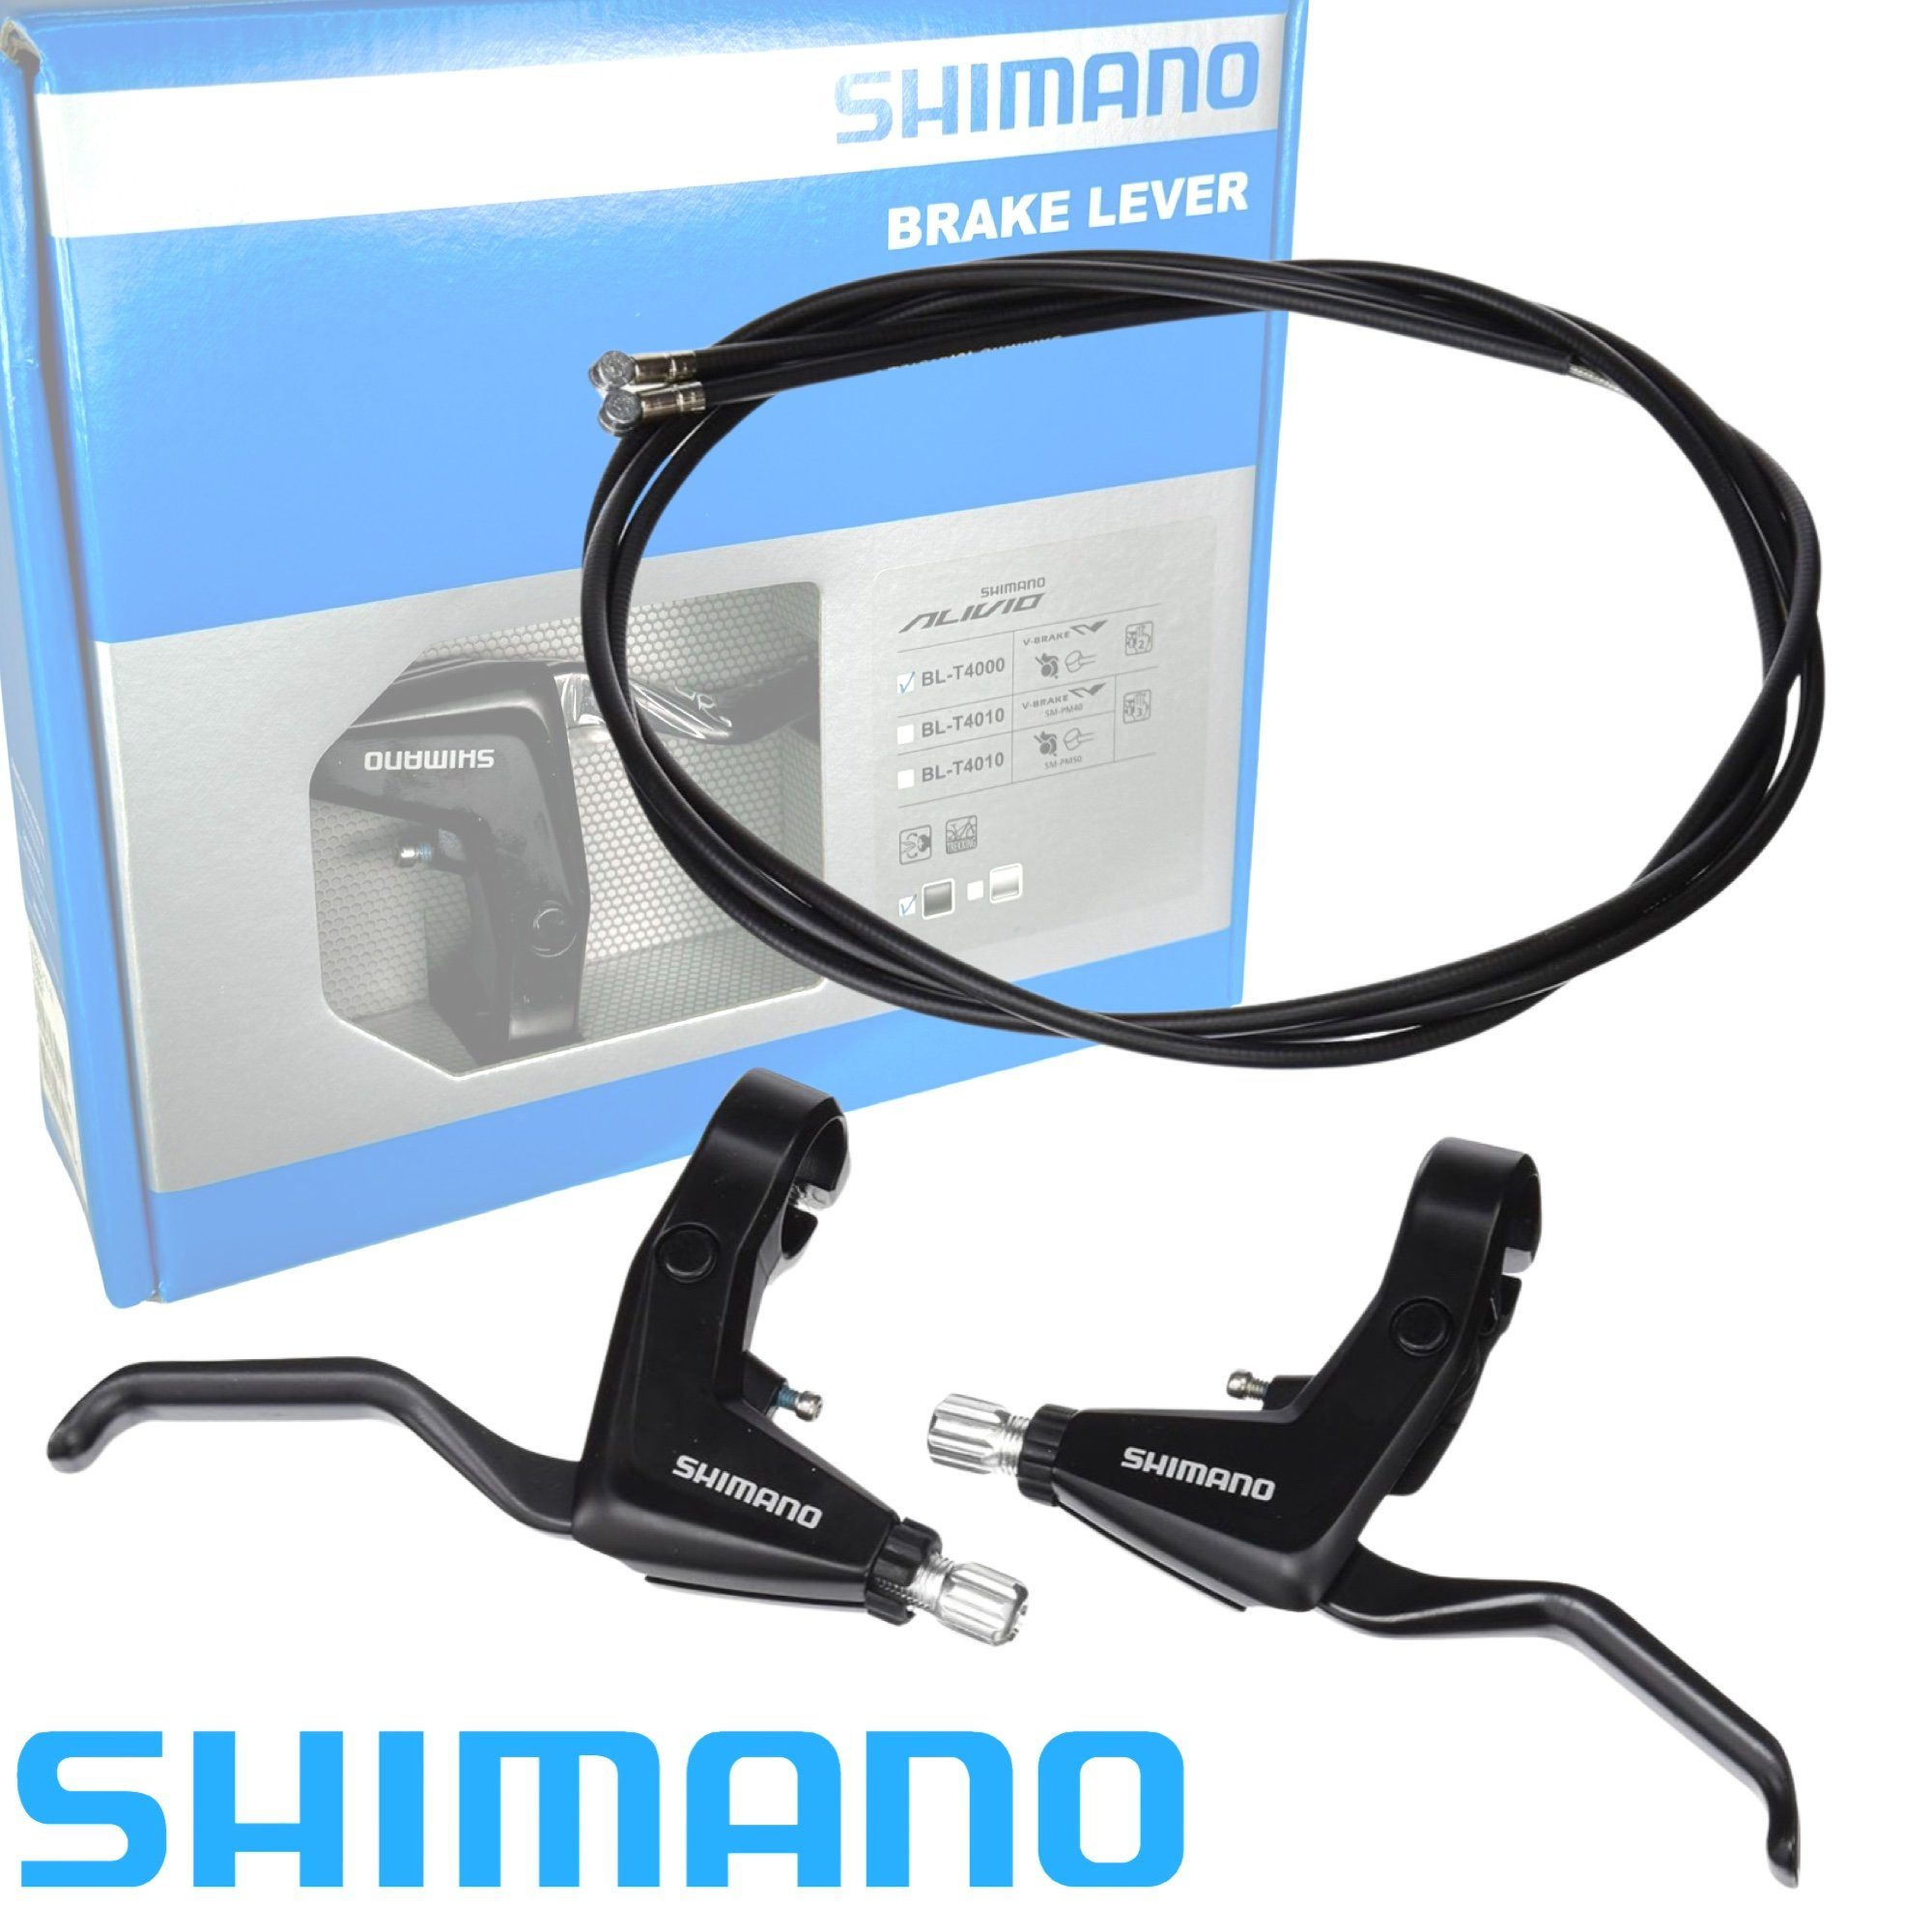 SHIMANO Shimano Bremsgriffe Fahrrad Paar L+R Felgenbremse BL-T4000 Züge 1 inklusive